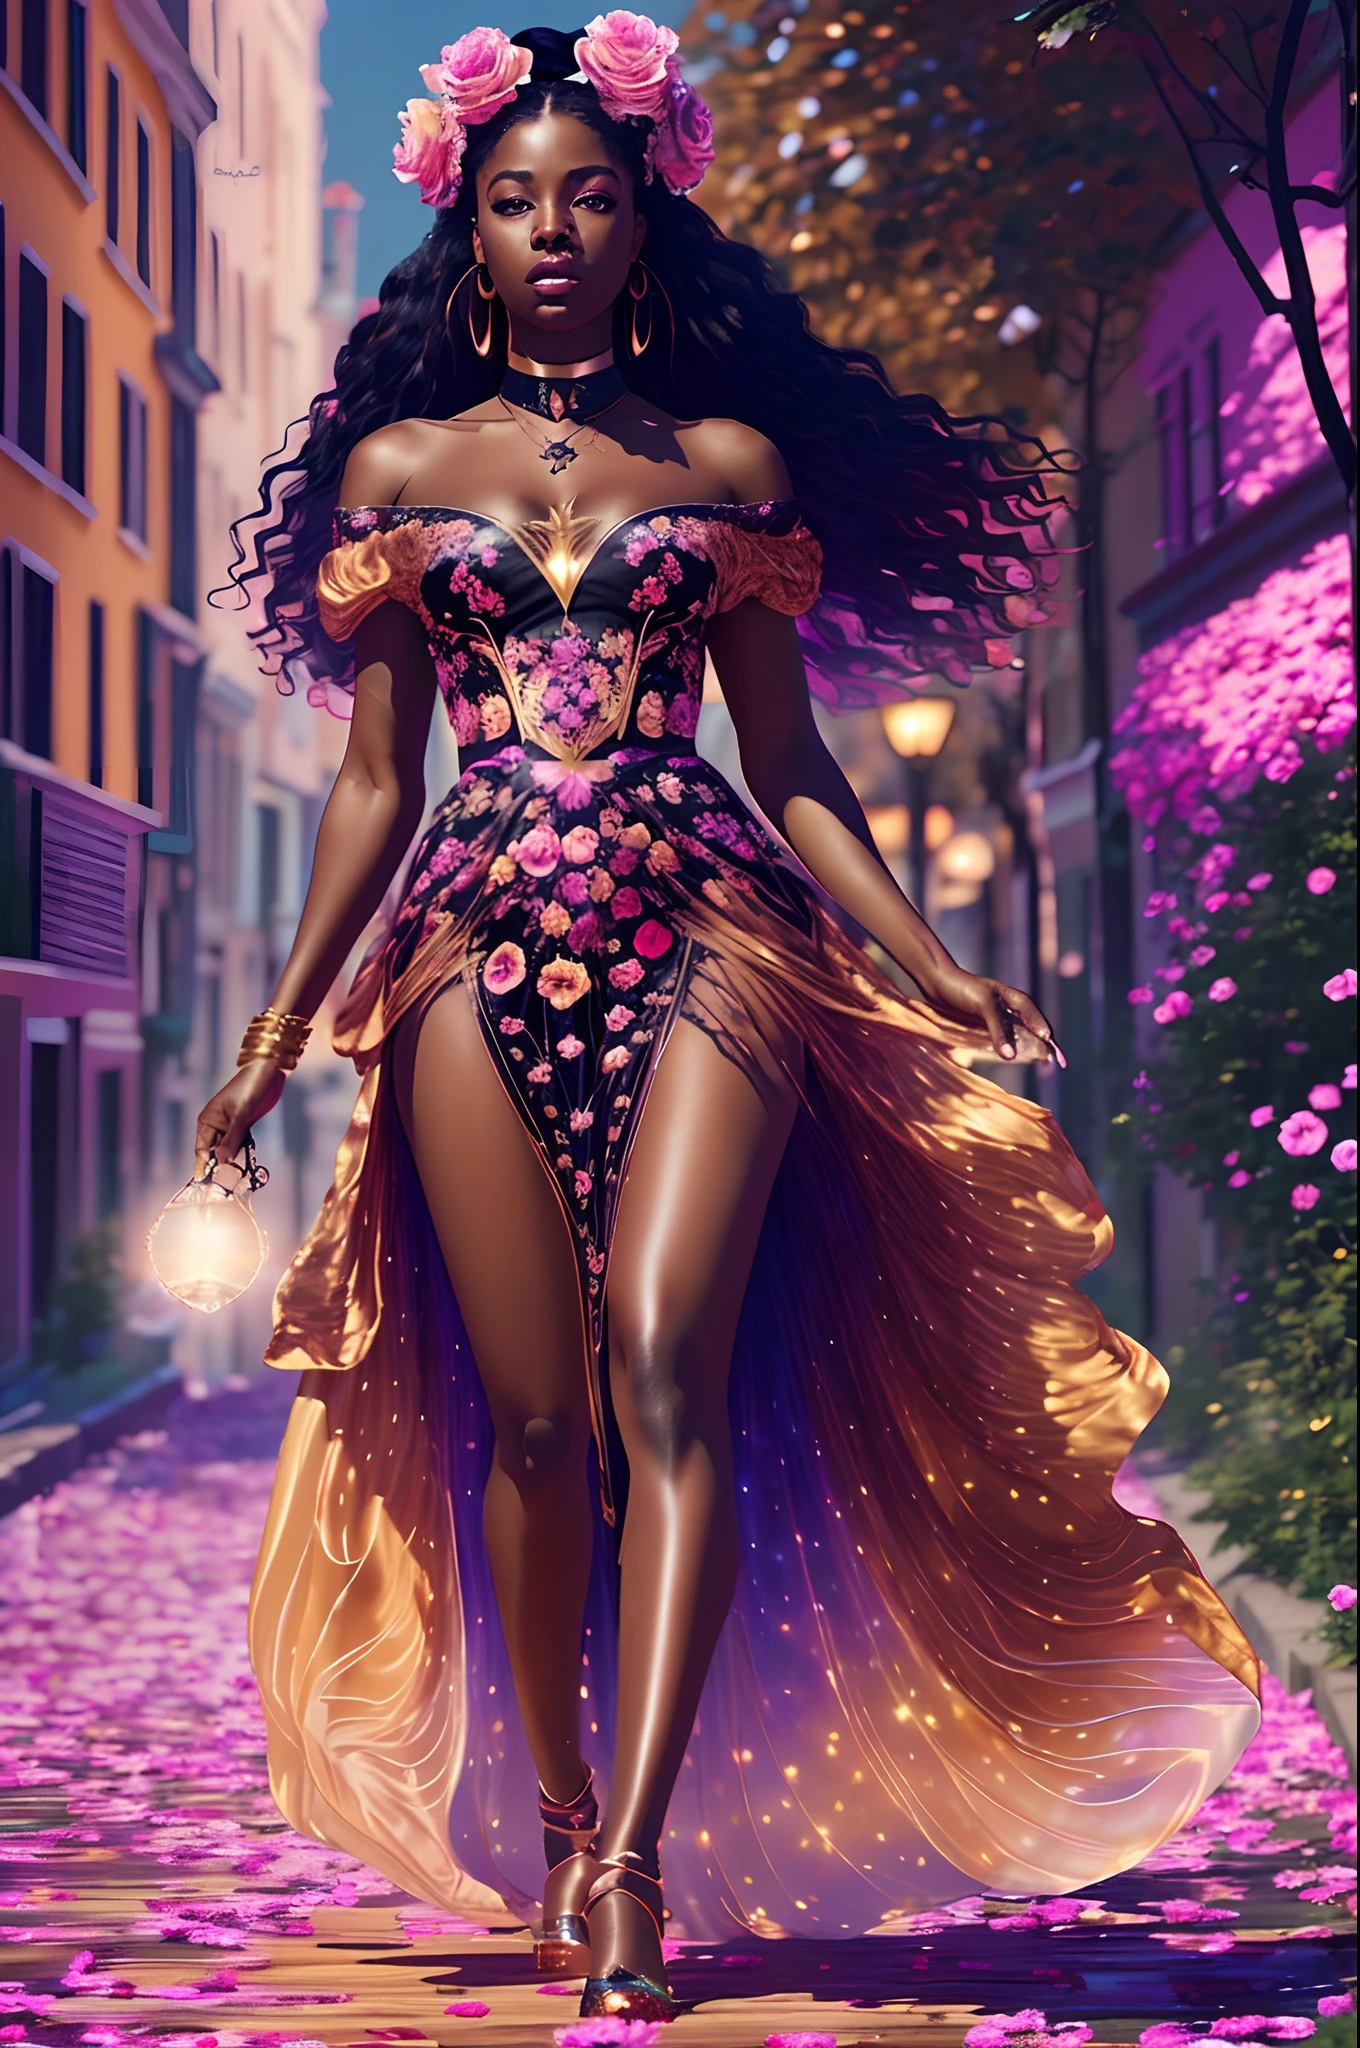 美麗的黑人婦女穿著絲綢柔軟的連身裙走在玫瑰金色的天堂, 附有虹彩光, 高度細緻的圖像, 充滿活力的美麗色彩, 逼真的影像, 32k, 超高畫質, 虛幻引擎渲染, 電影燈光, 貝拉盒子的藝術作品, 藝術傑姆風格, deviantart --auto --s2